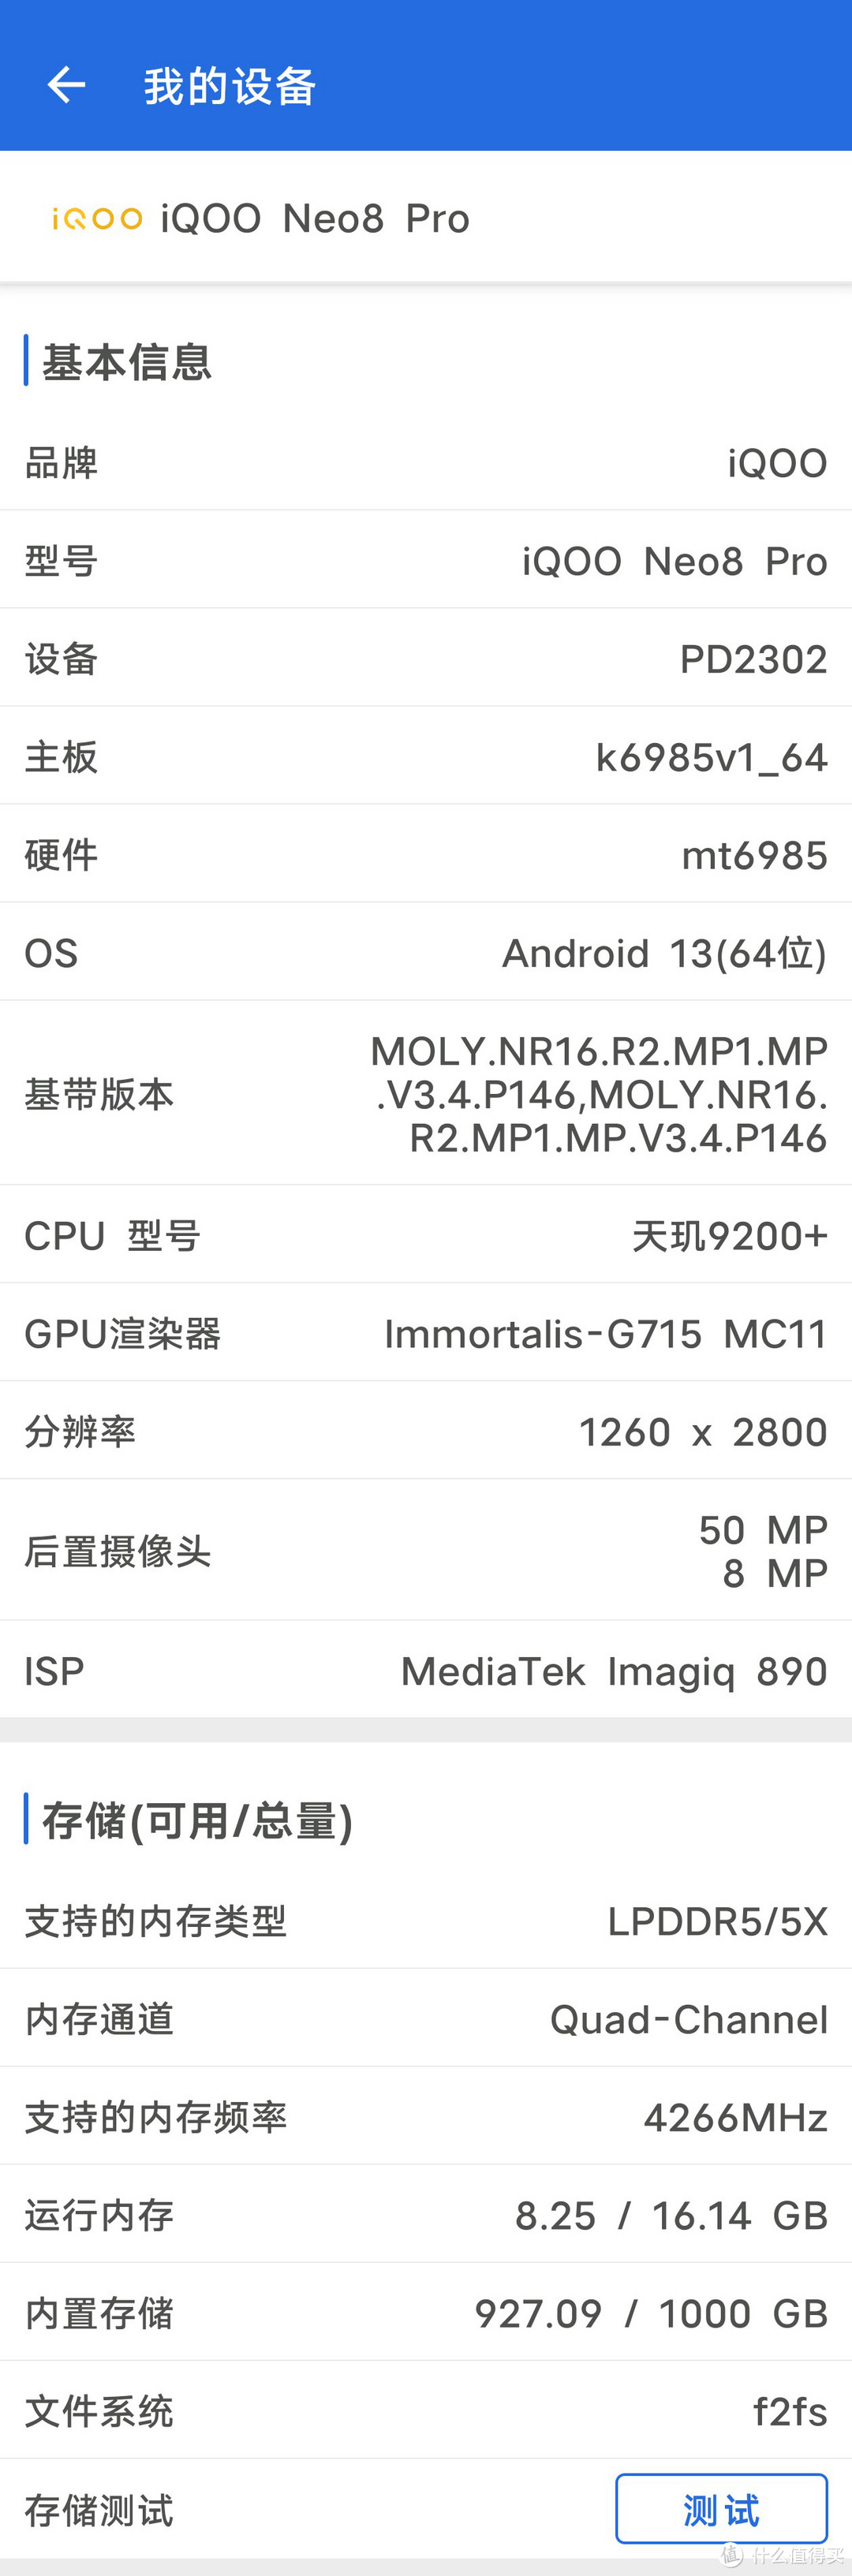 没想到iPhone 14 Pro 1TB的内置存储读写速度还干不过iQOO Neo 8 Pro 1TB UFS 4.0的内置存储读写速度!?